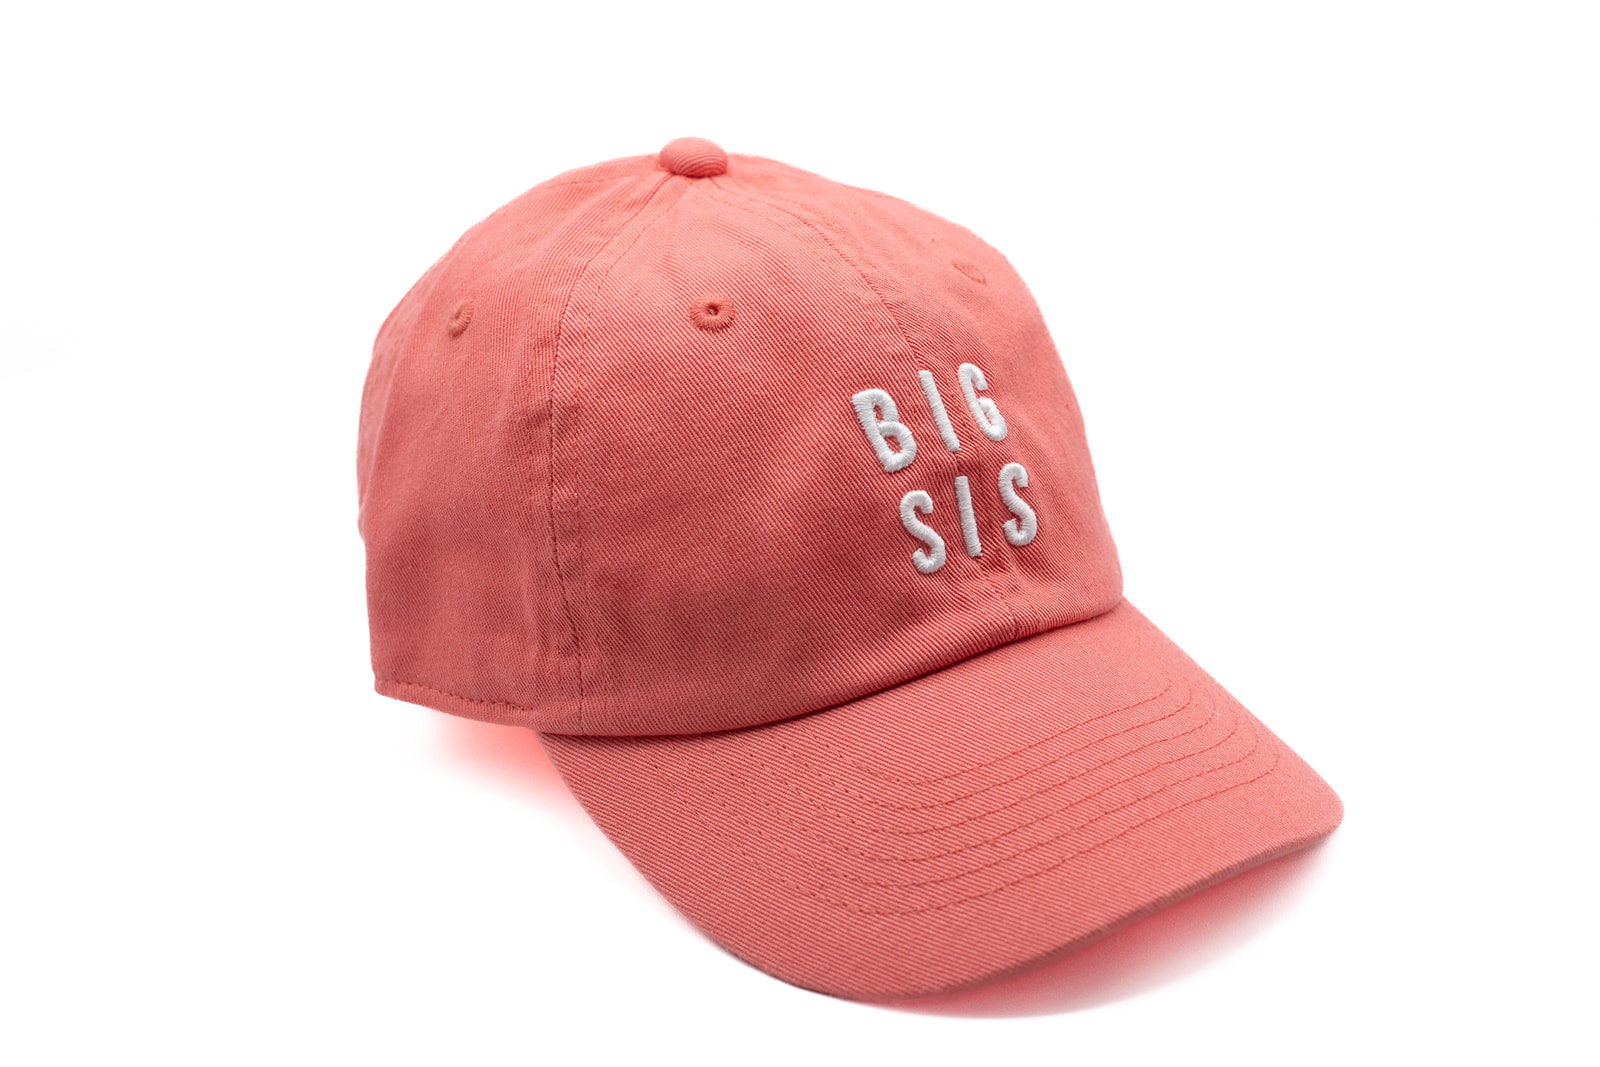 Coral Crush Big Sis Hat